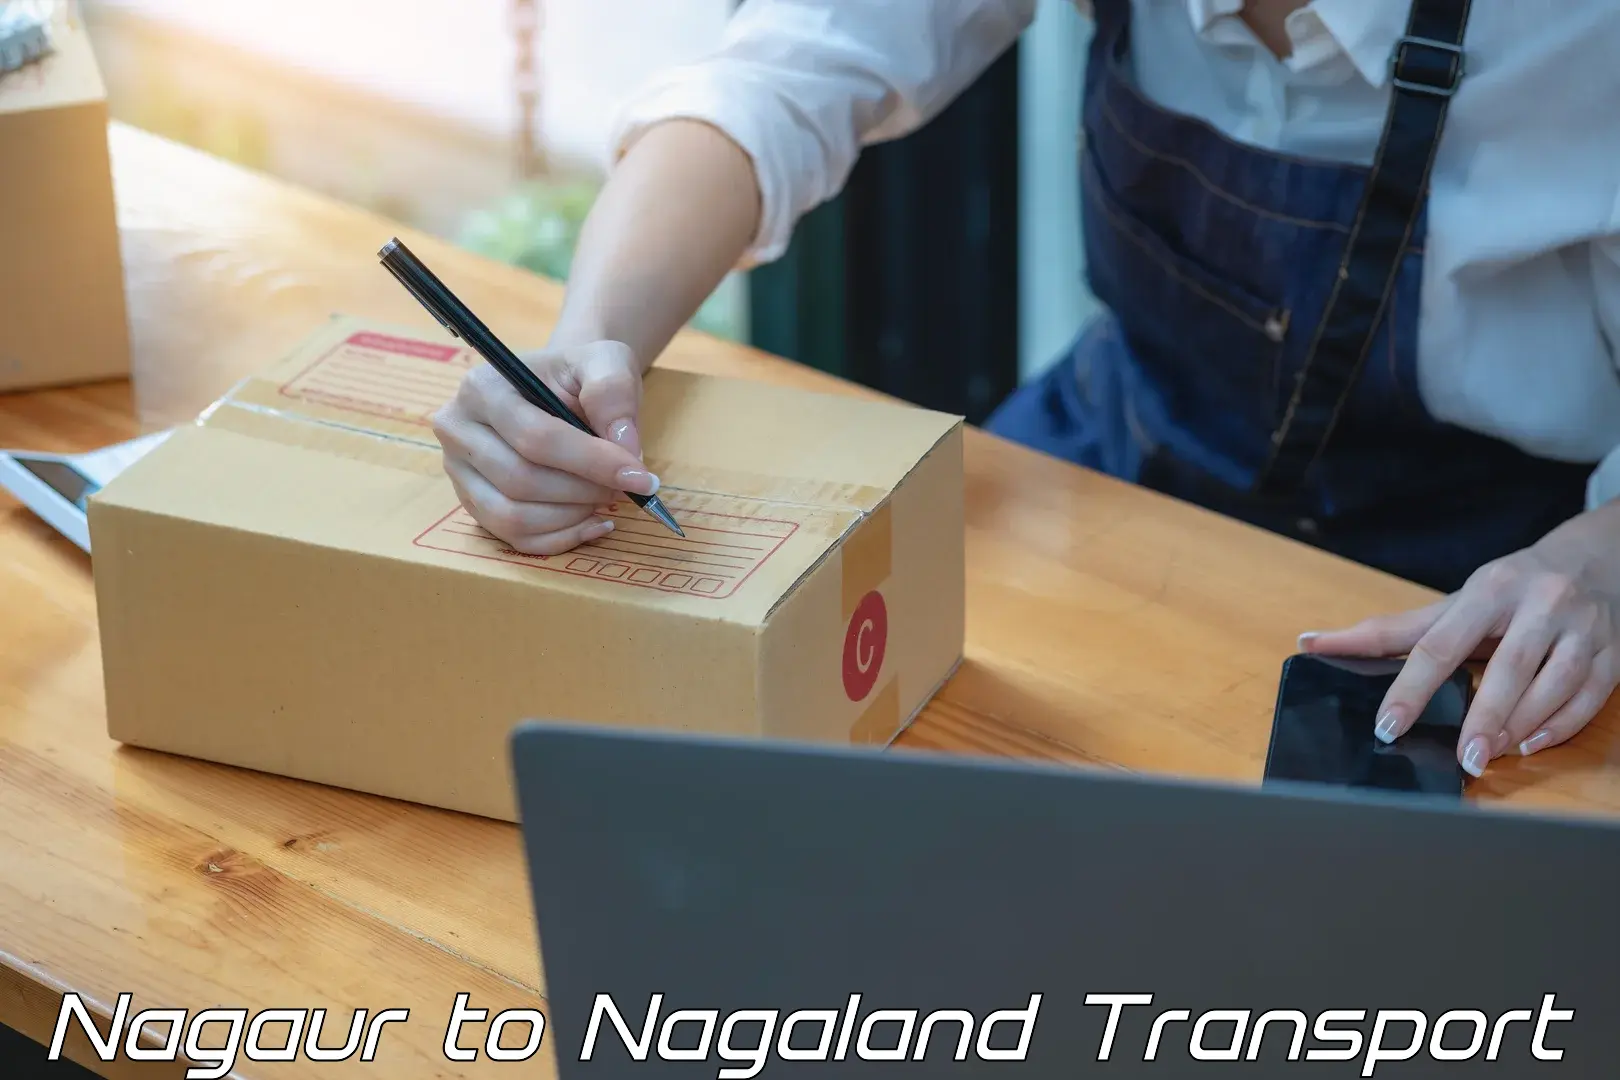 Cycle transportation service Nagaur to Nagaland